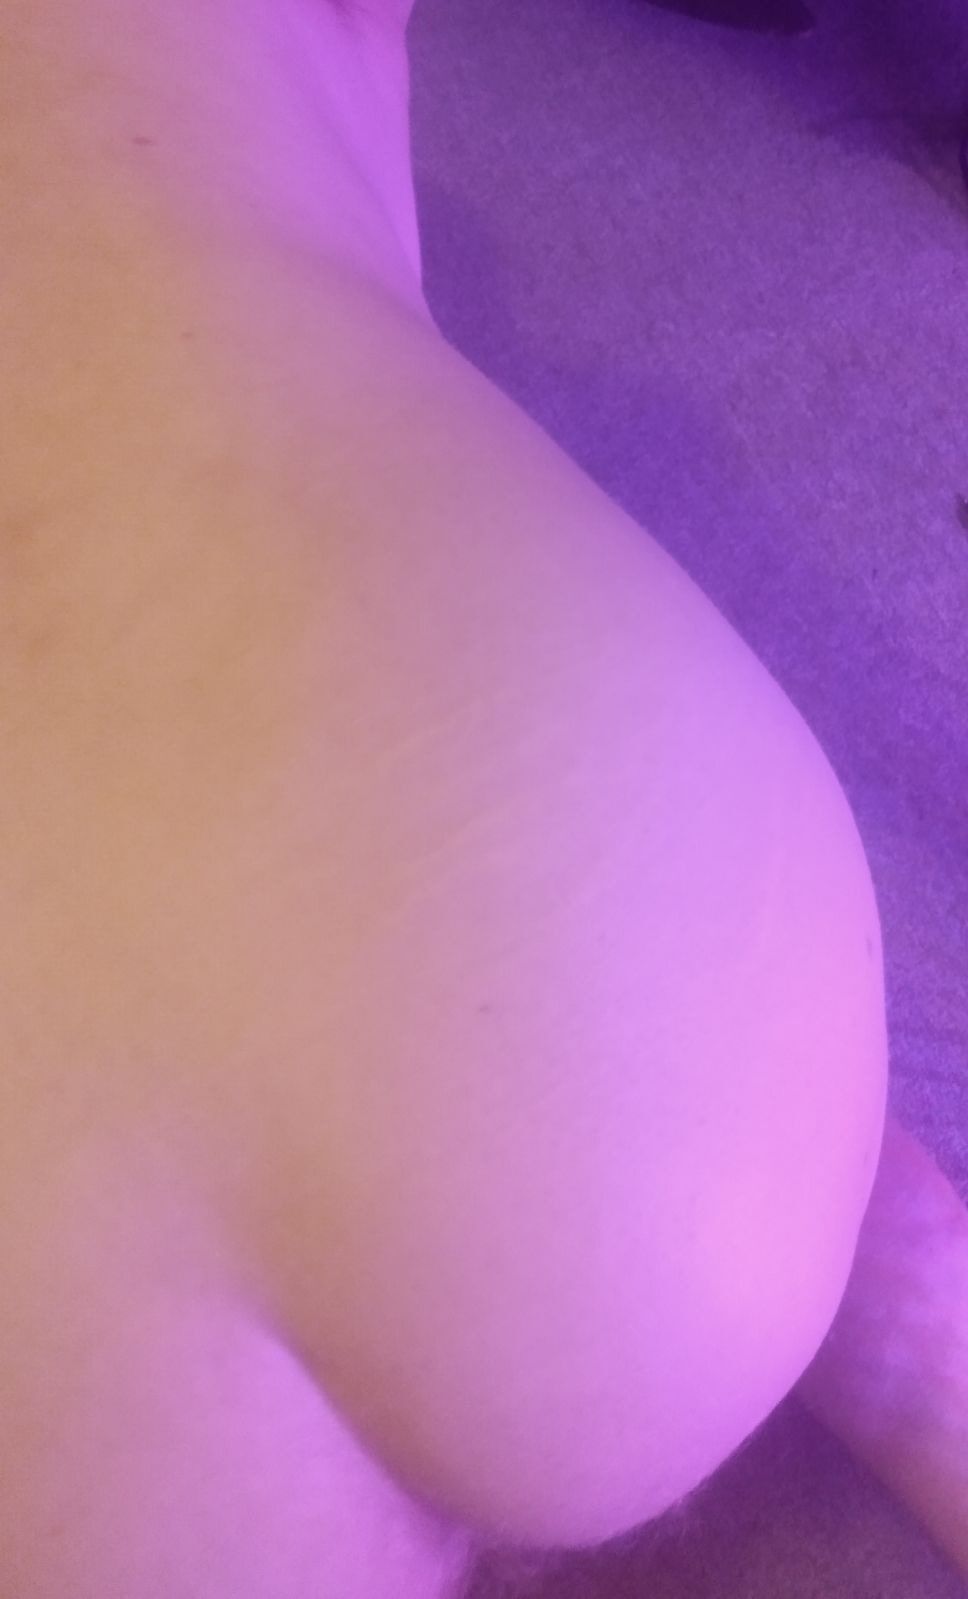 my pale ass #2